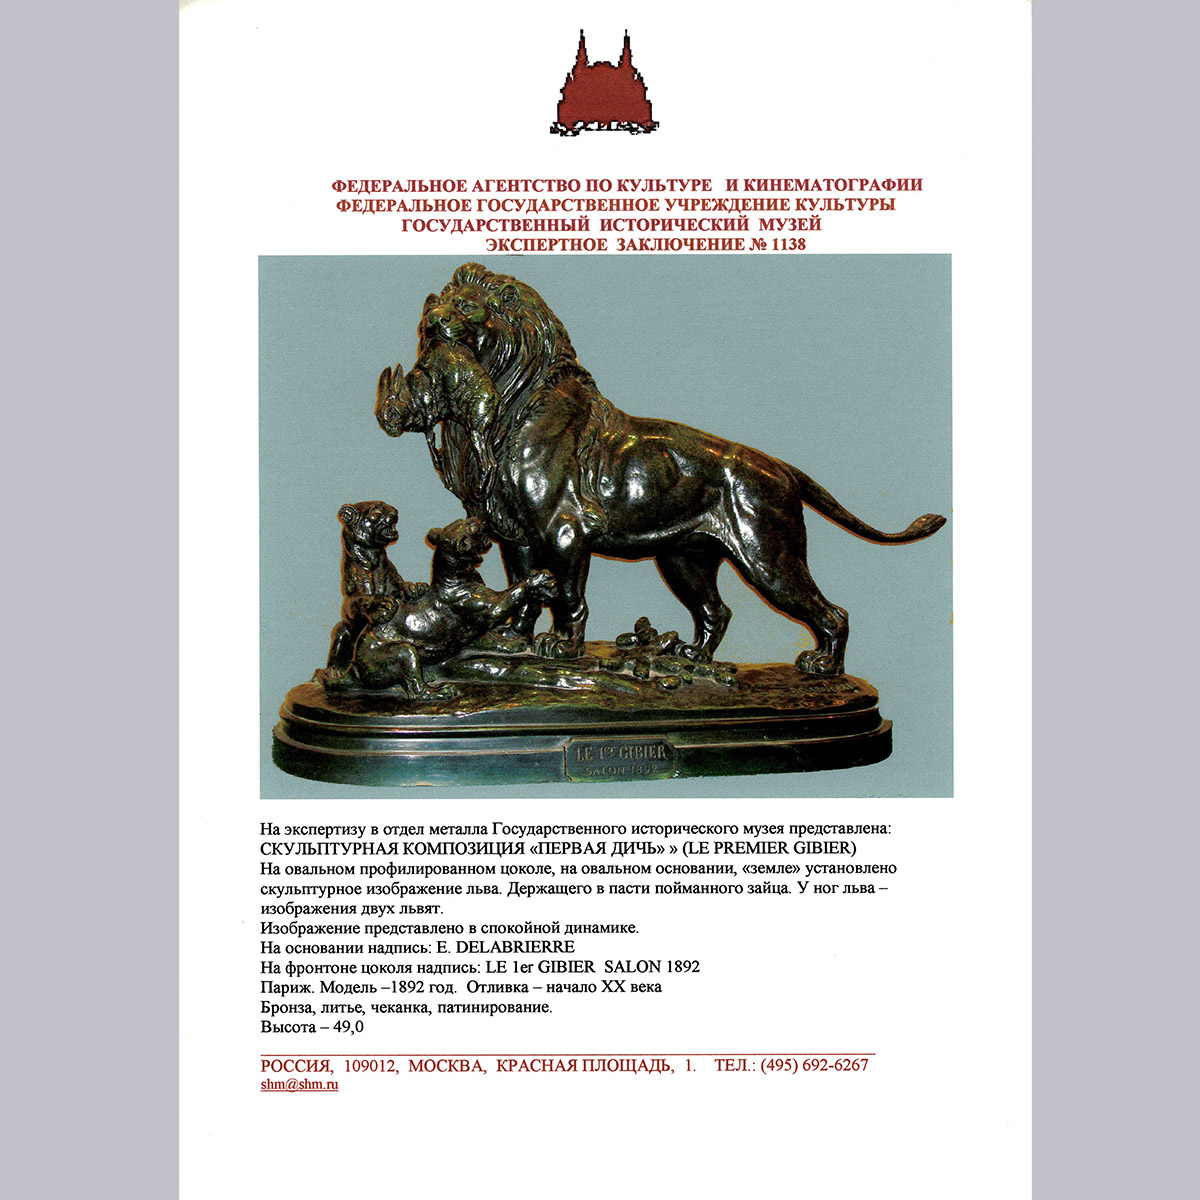 Скульптурная композиция «Первая дичь» из бронзы (Франция, Delabrierre)